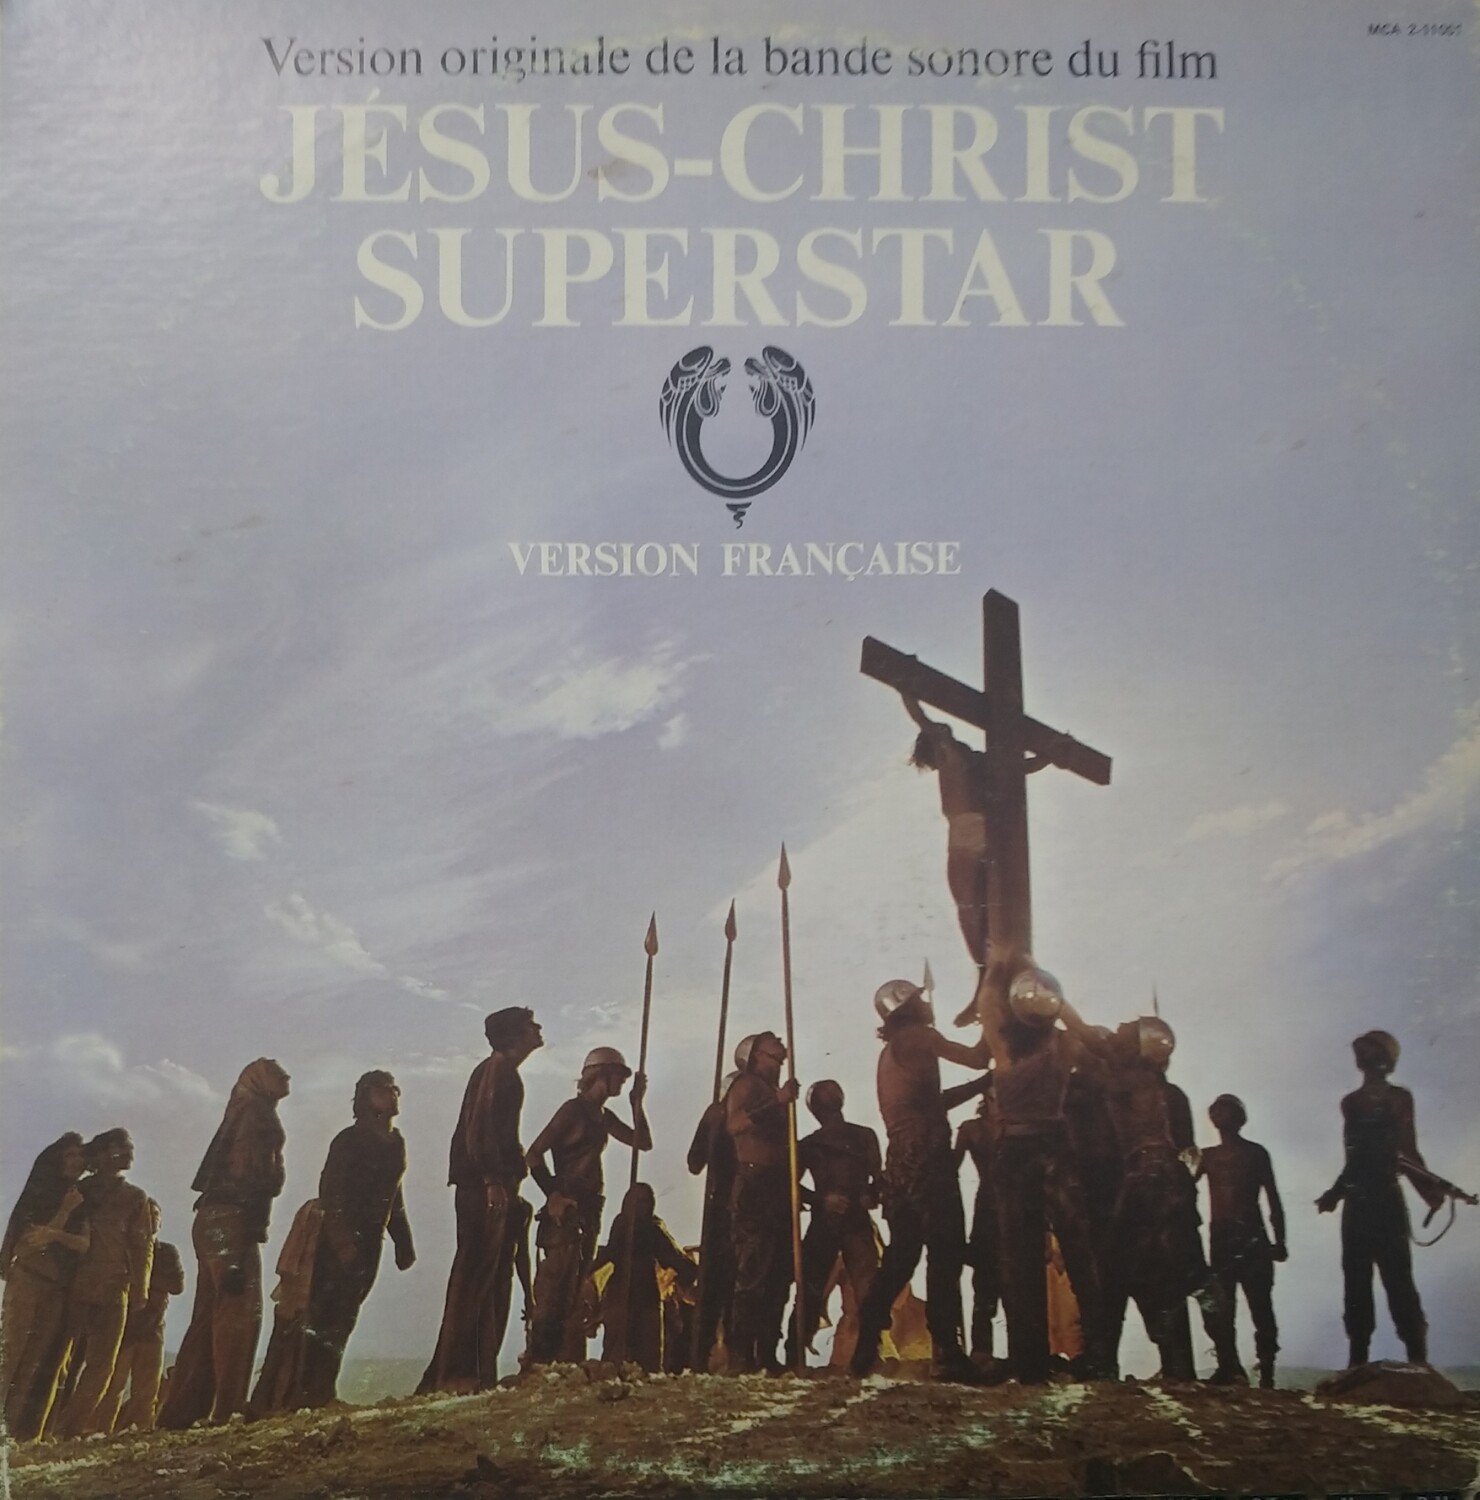 Jesus-Christ Superstar - Bande sonore française